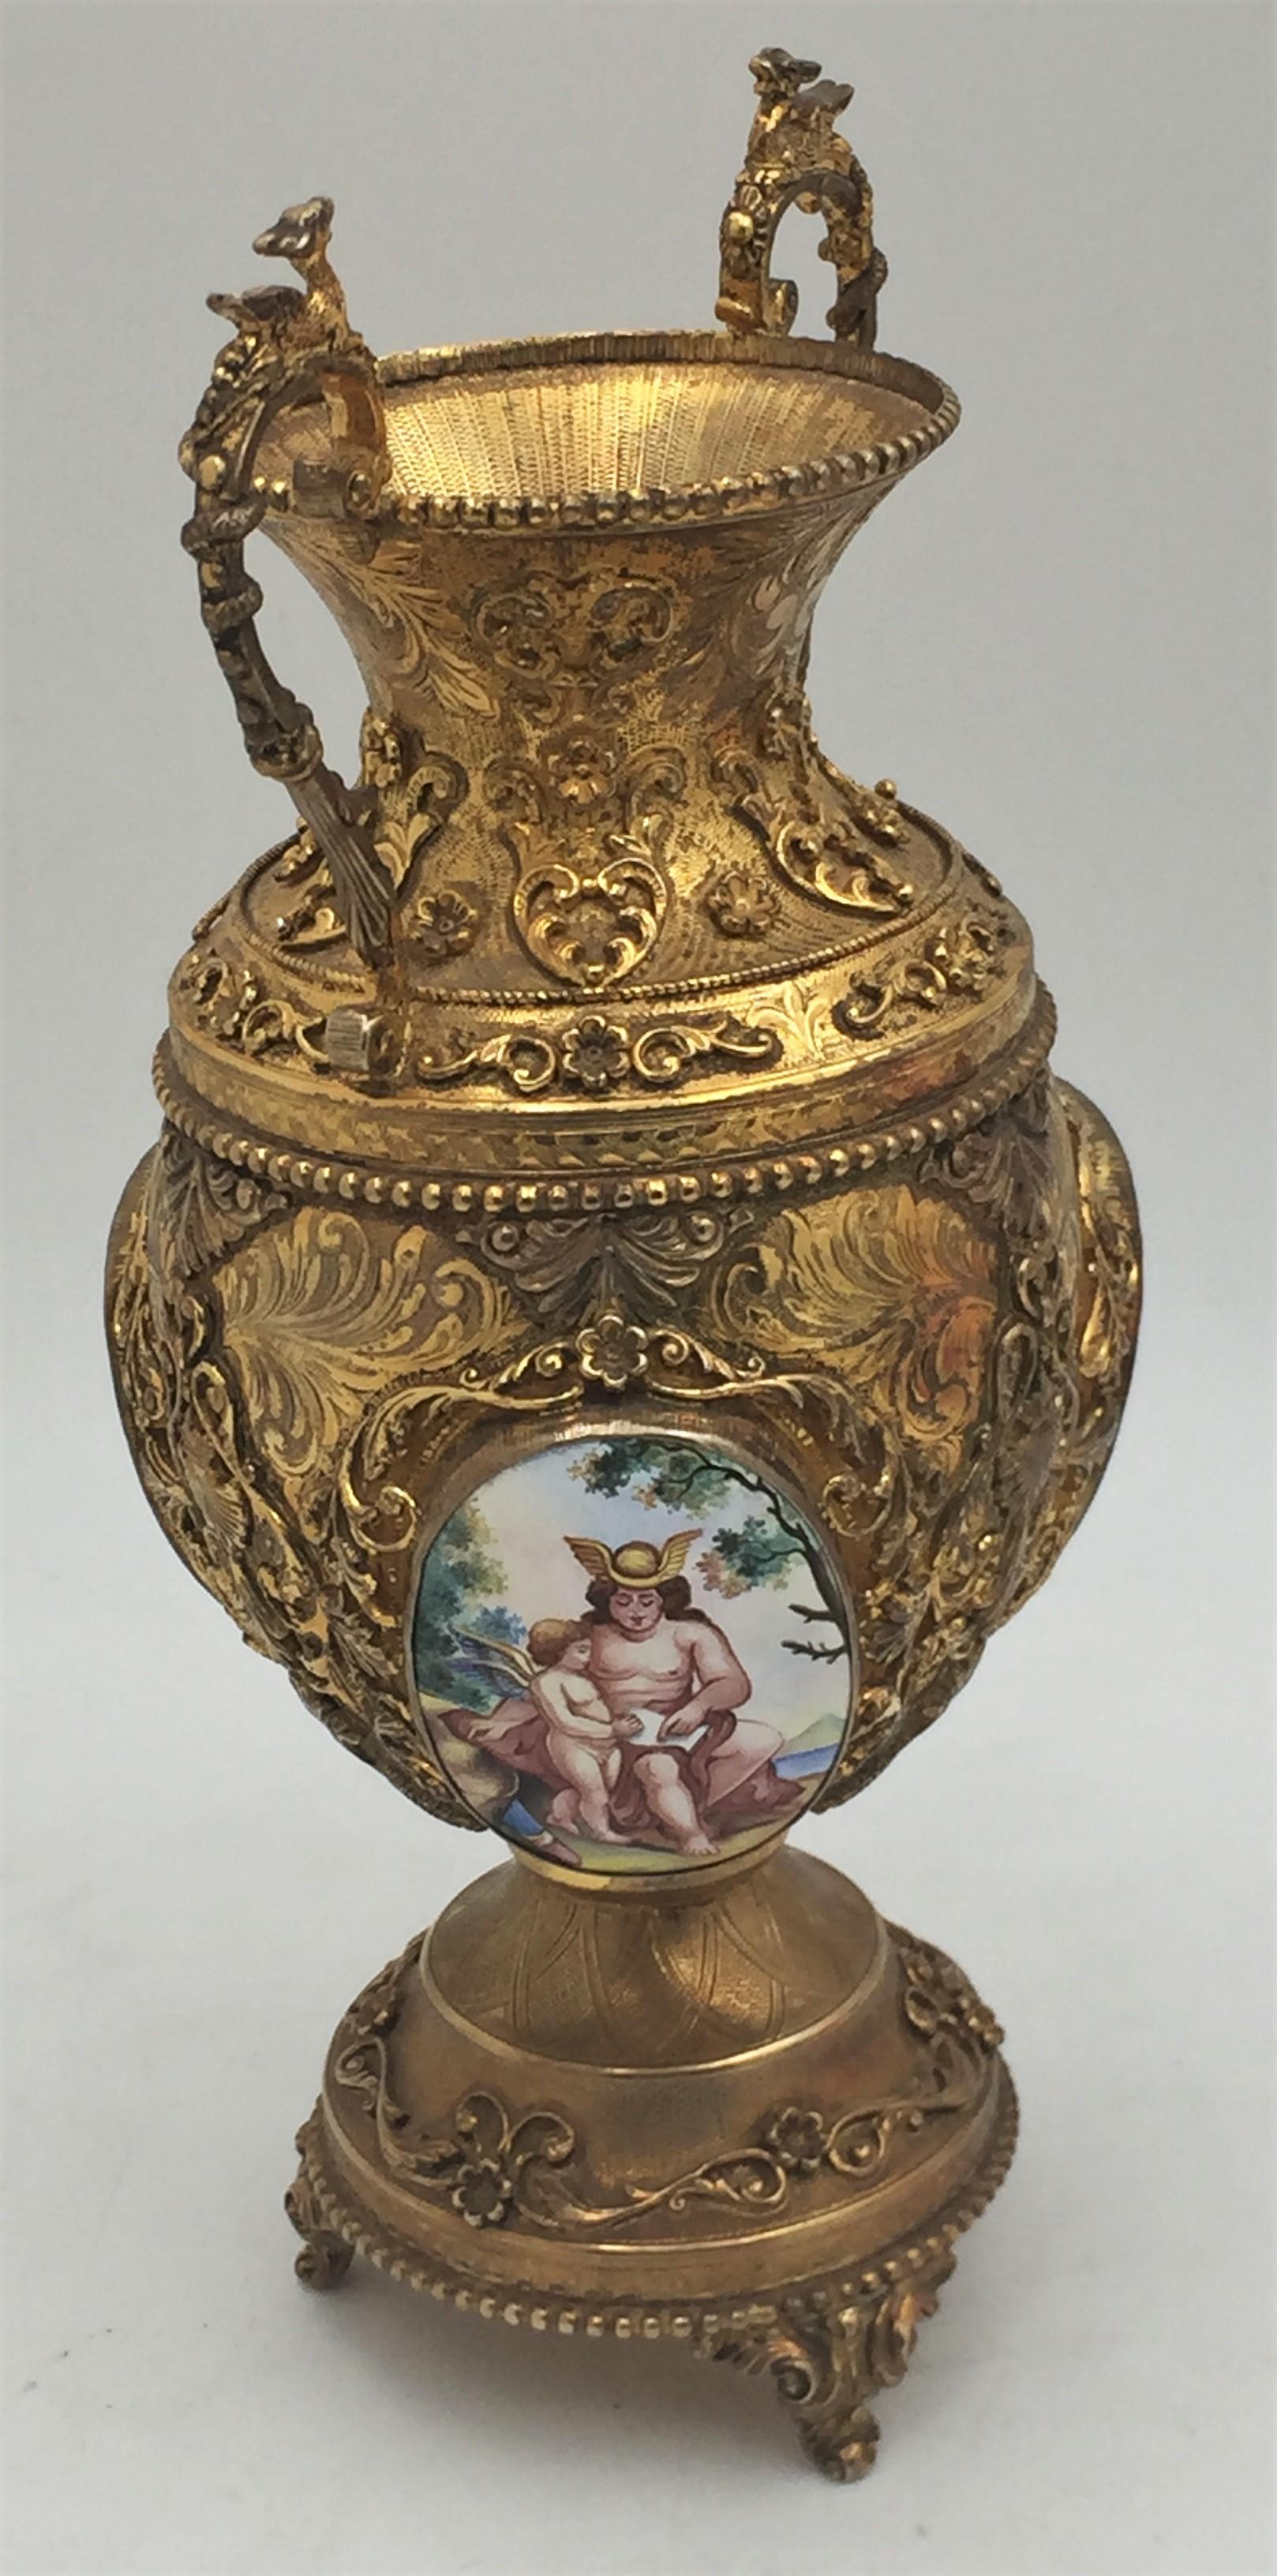 Italienische Vase aus vergoldetem Sterlingsilber, hochdekorativ mit emaillierten Plaketten, auf 4 Füßen stehend, mit wirbelnden Ornamenten über den Körper und den Boden, im Buccellati-Stil. Es misst 9 1/2 